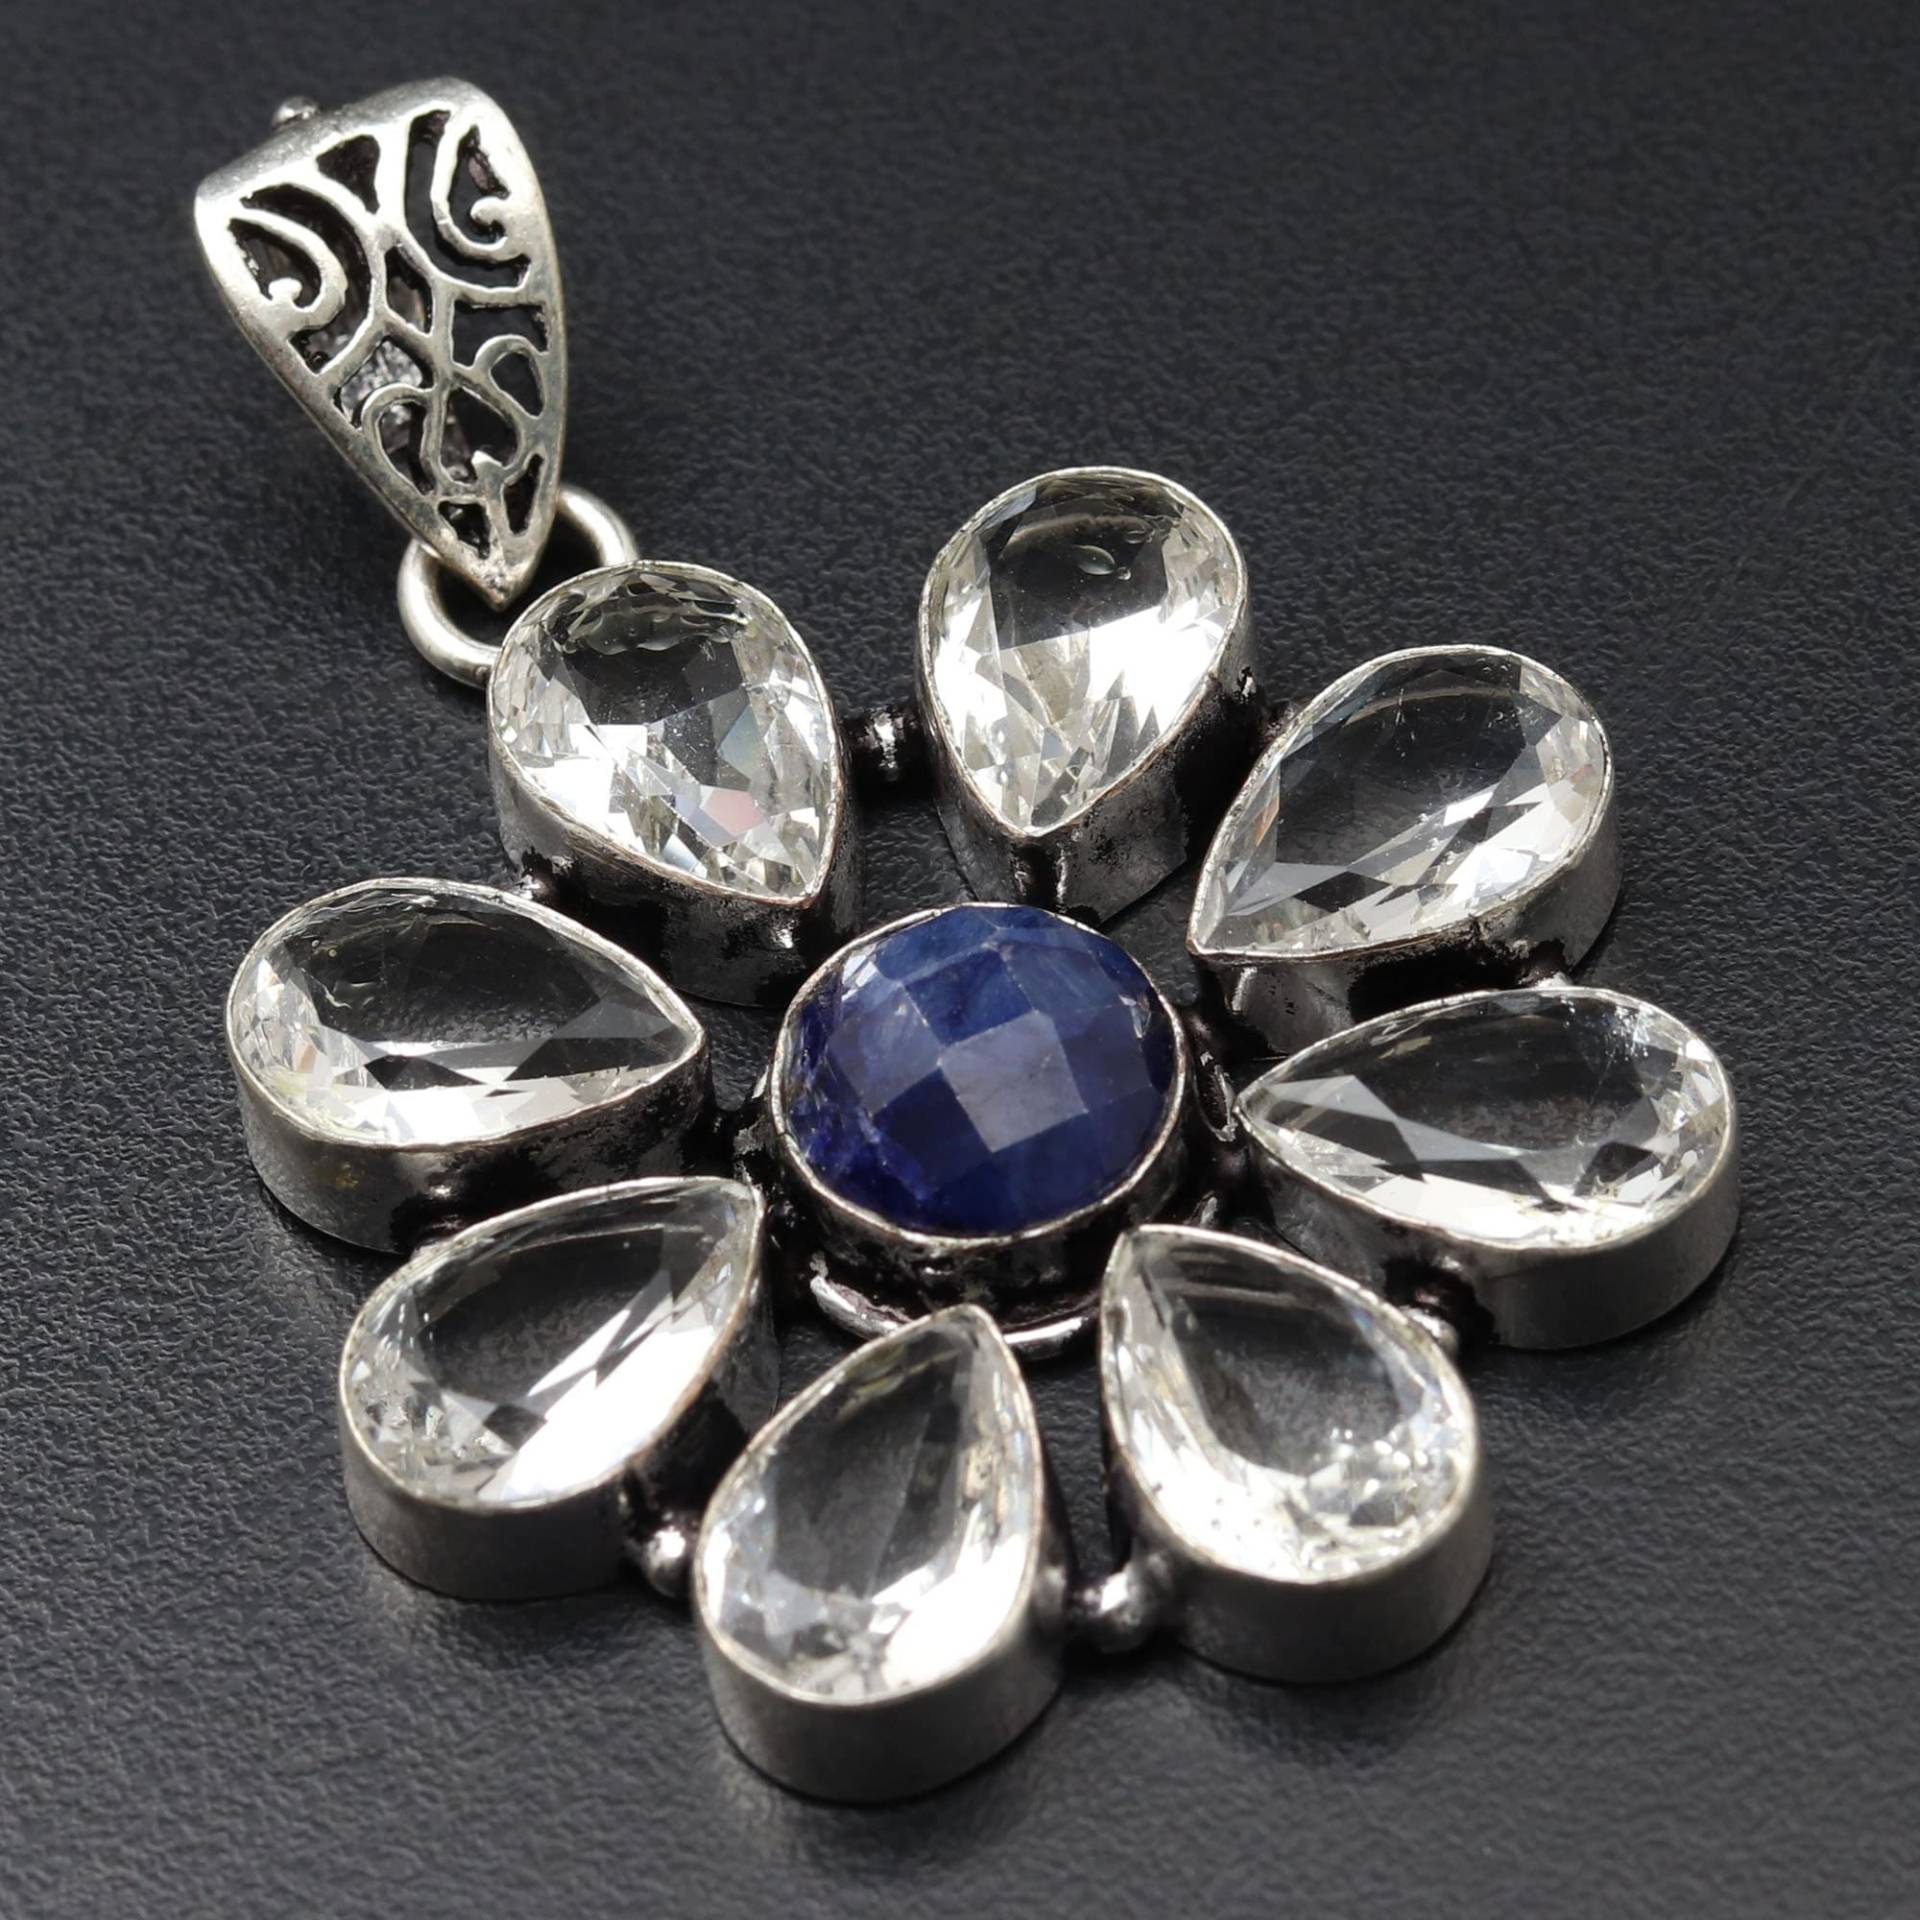 Kristallquarz Blau Saphir Edelstein Anhänger Schmuck Frau Geschenk Für Sie Ihn von JewelleryexportGifts